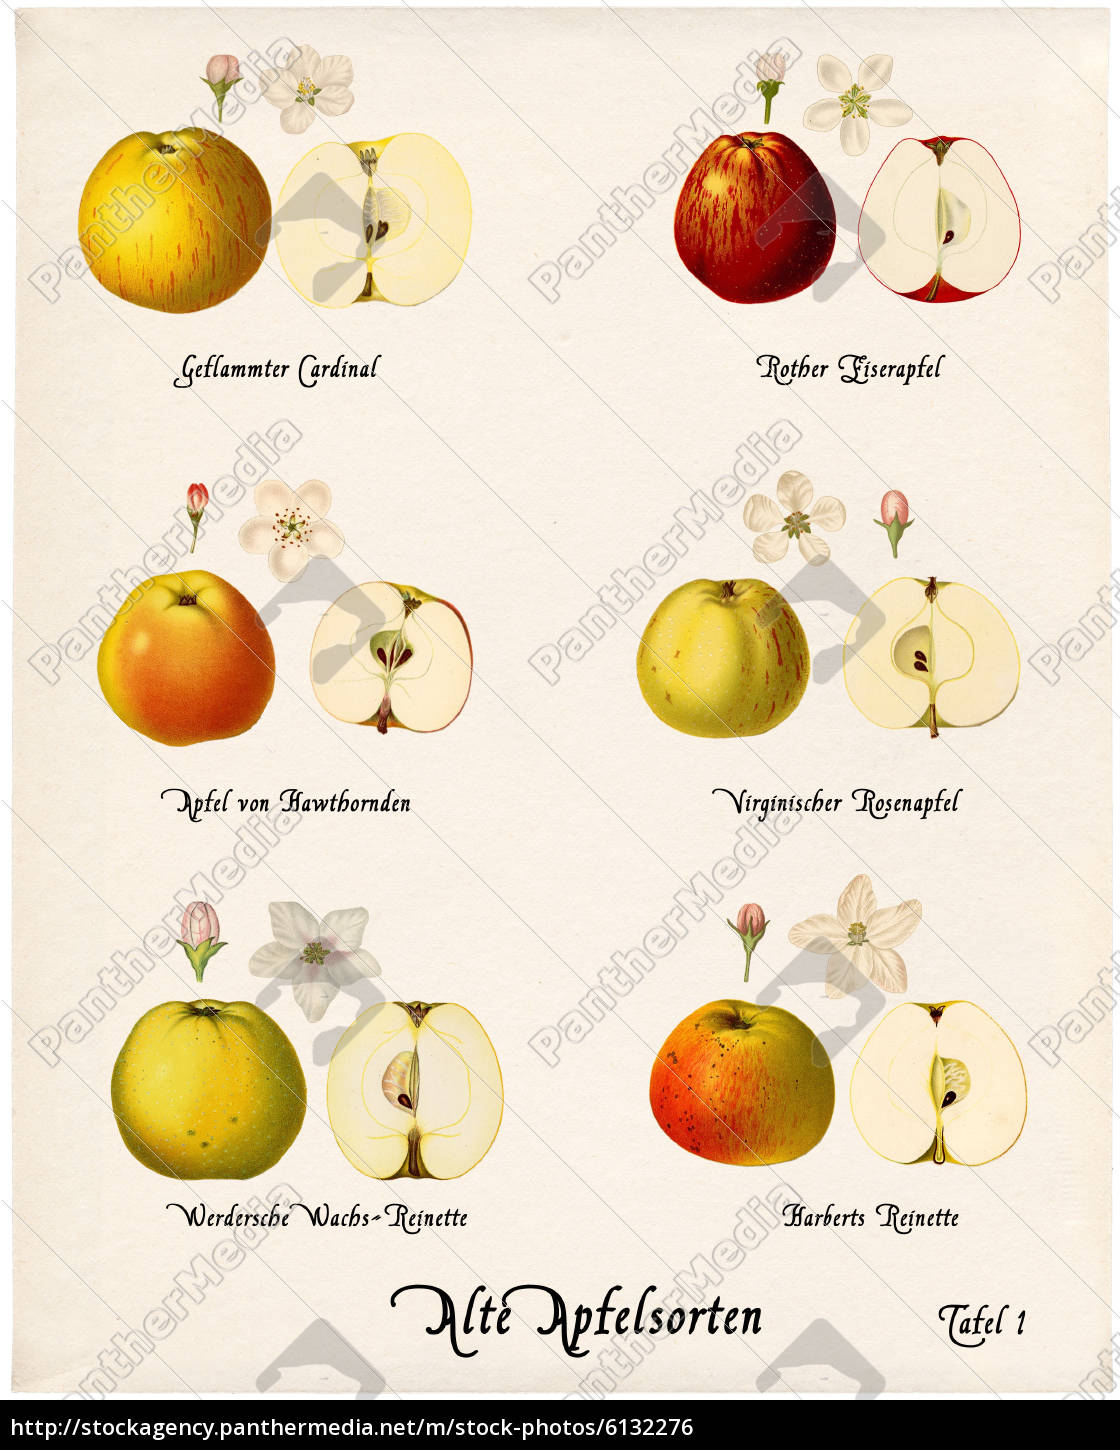 Jakie są odmiany jabłek i jak wyglądają?